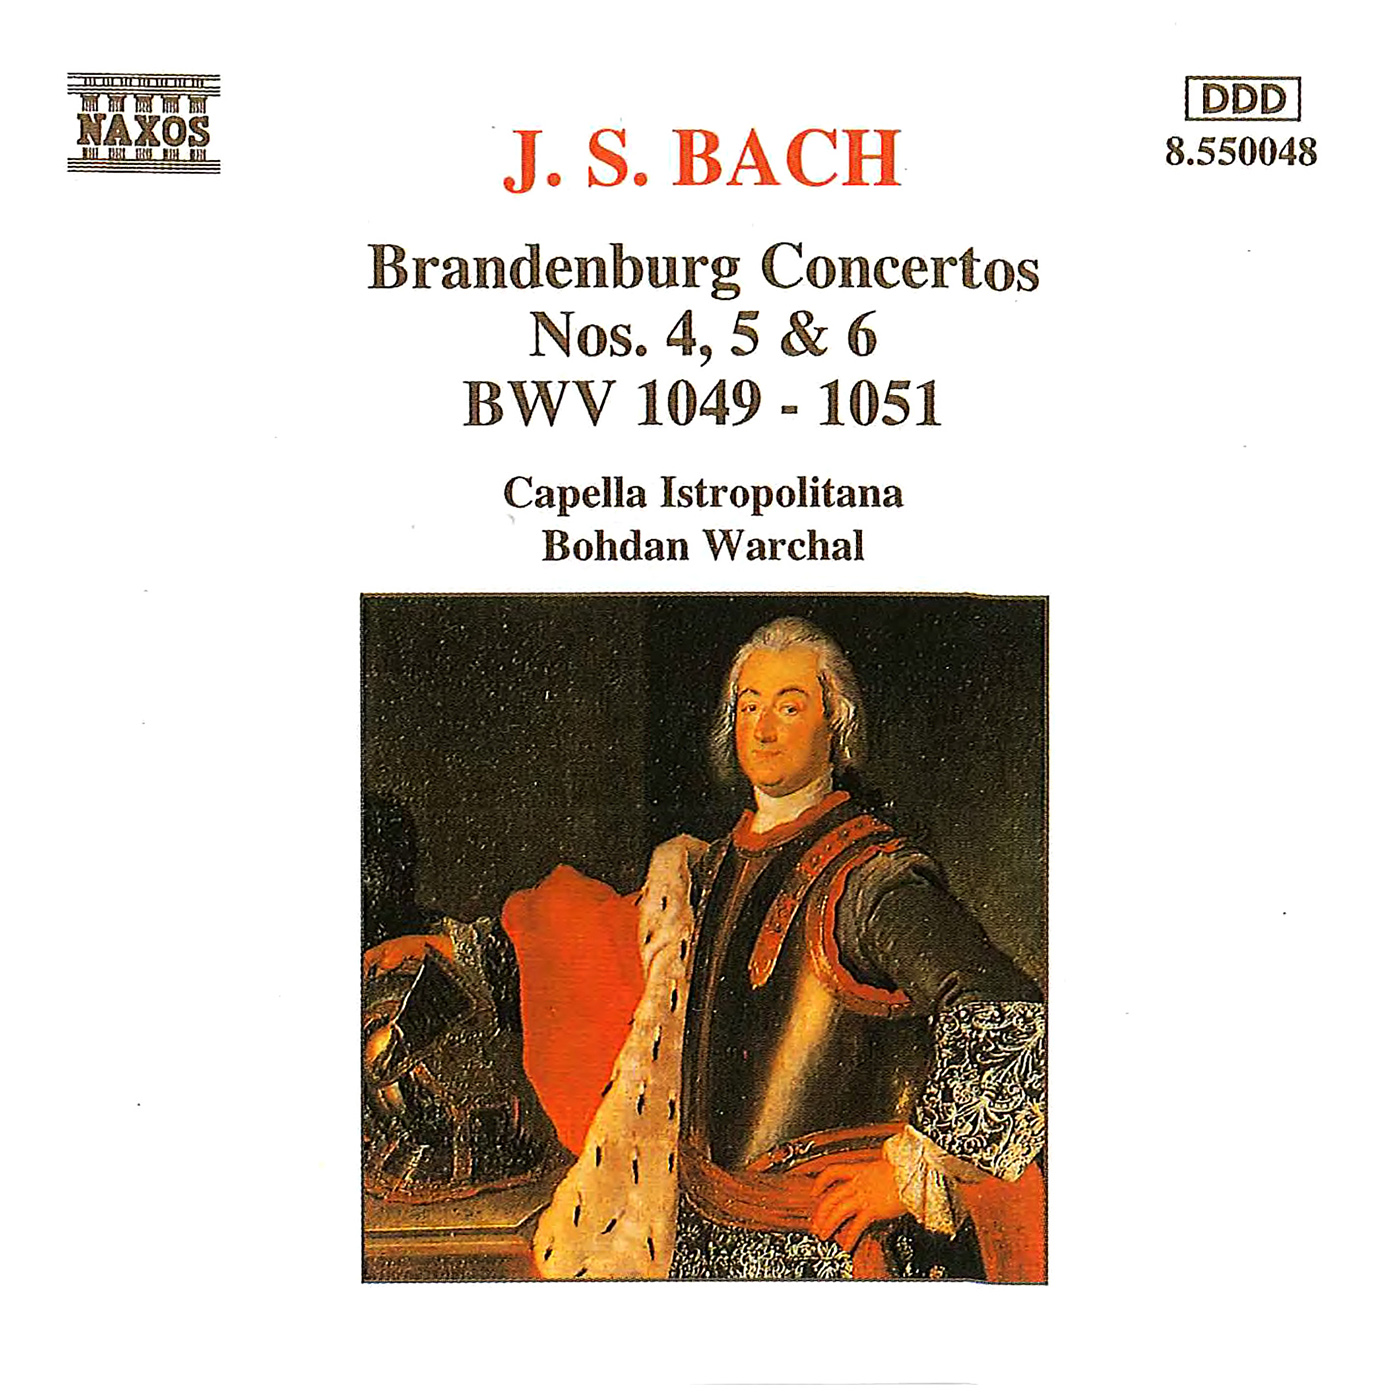 Brandenburg Concerto No. 6 in B-Flat Major, BWV 1051:I. Allegro